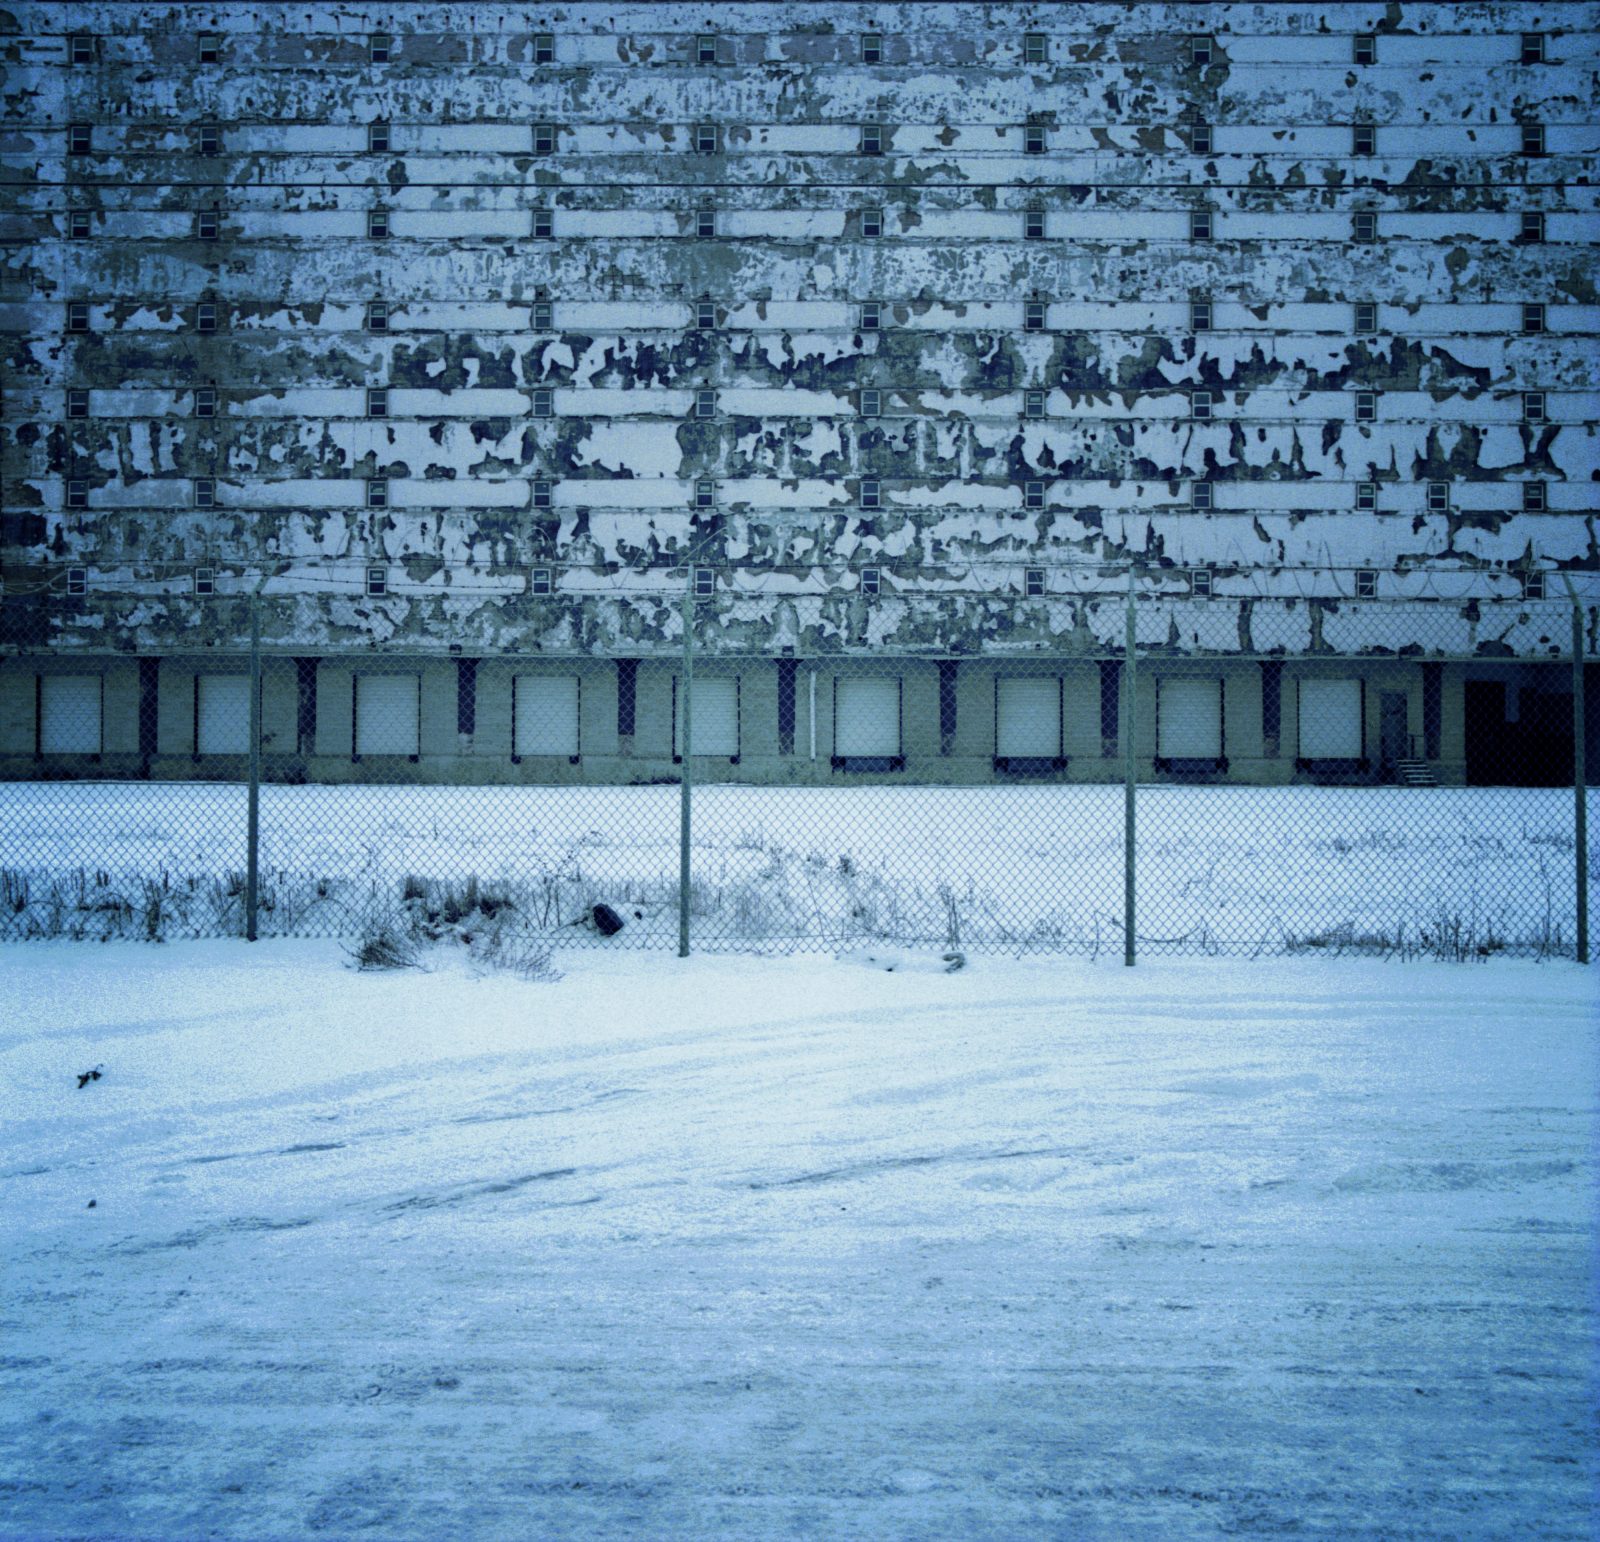 Factory wall at night. Detroit, Michigan.